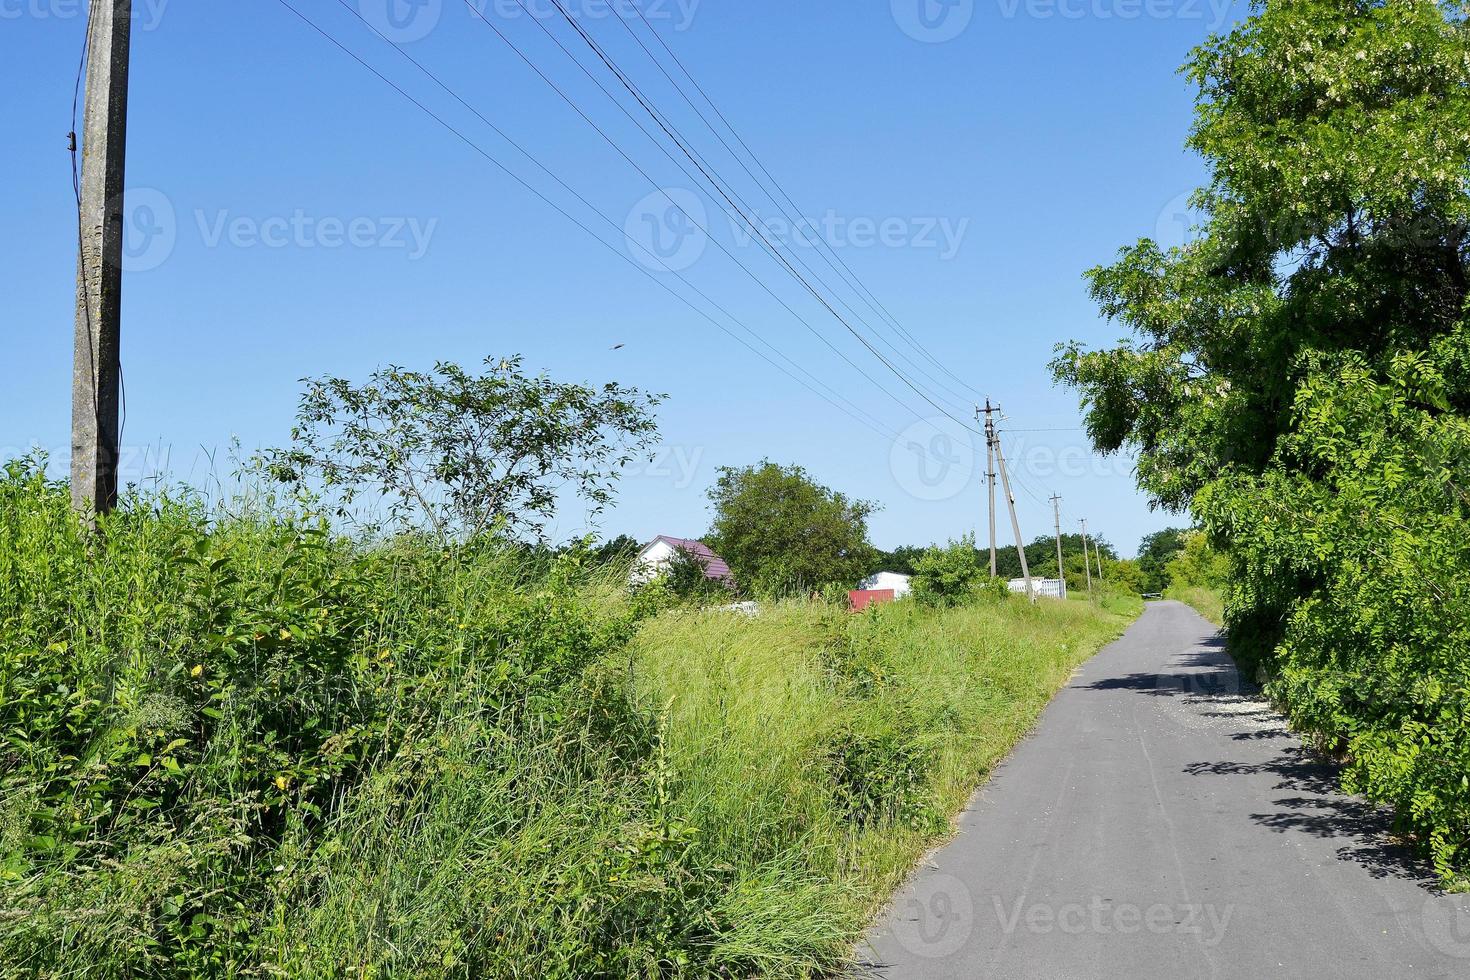 bella strada asfaltata vuota in campagna su sfondo colorato foto